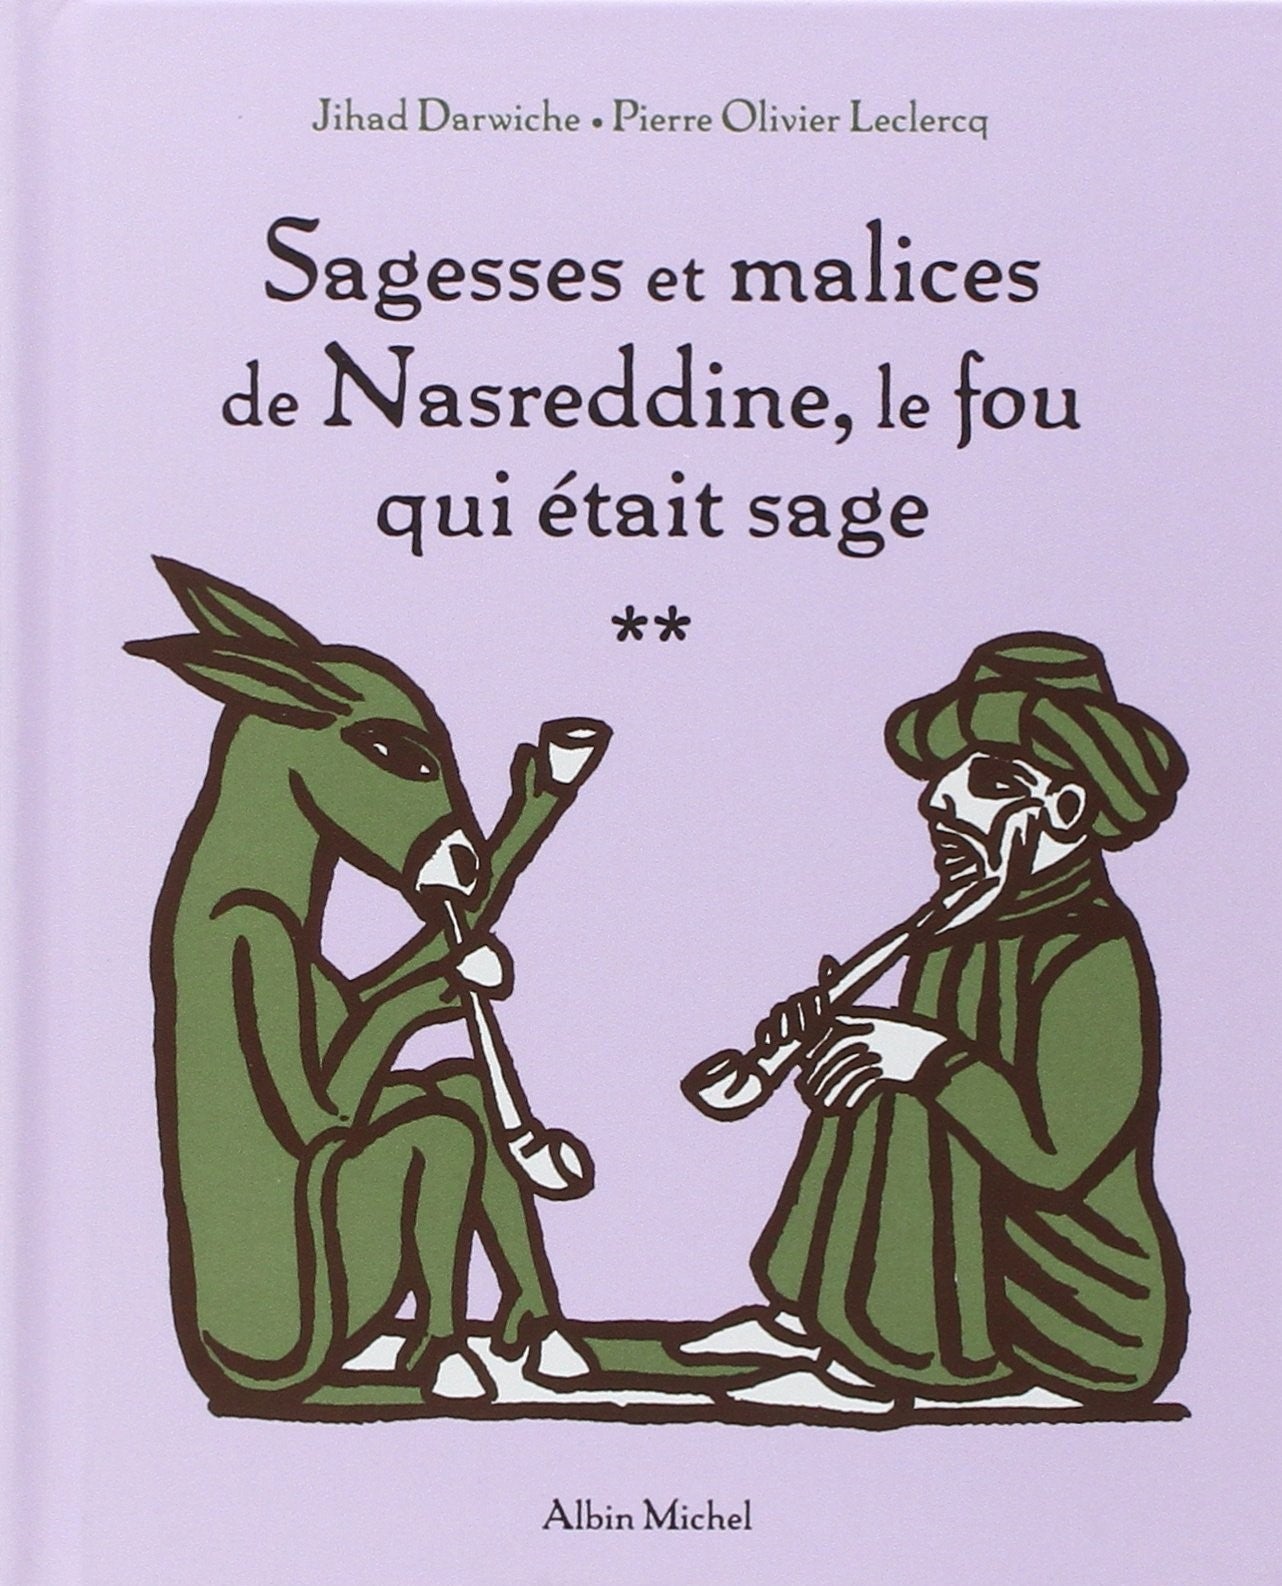 Livre ISBN 2226140271 Sagesses et malices # 2 : Le fou qui était sage (Jihad Darwiche)